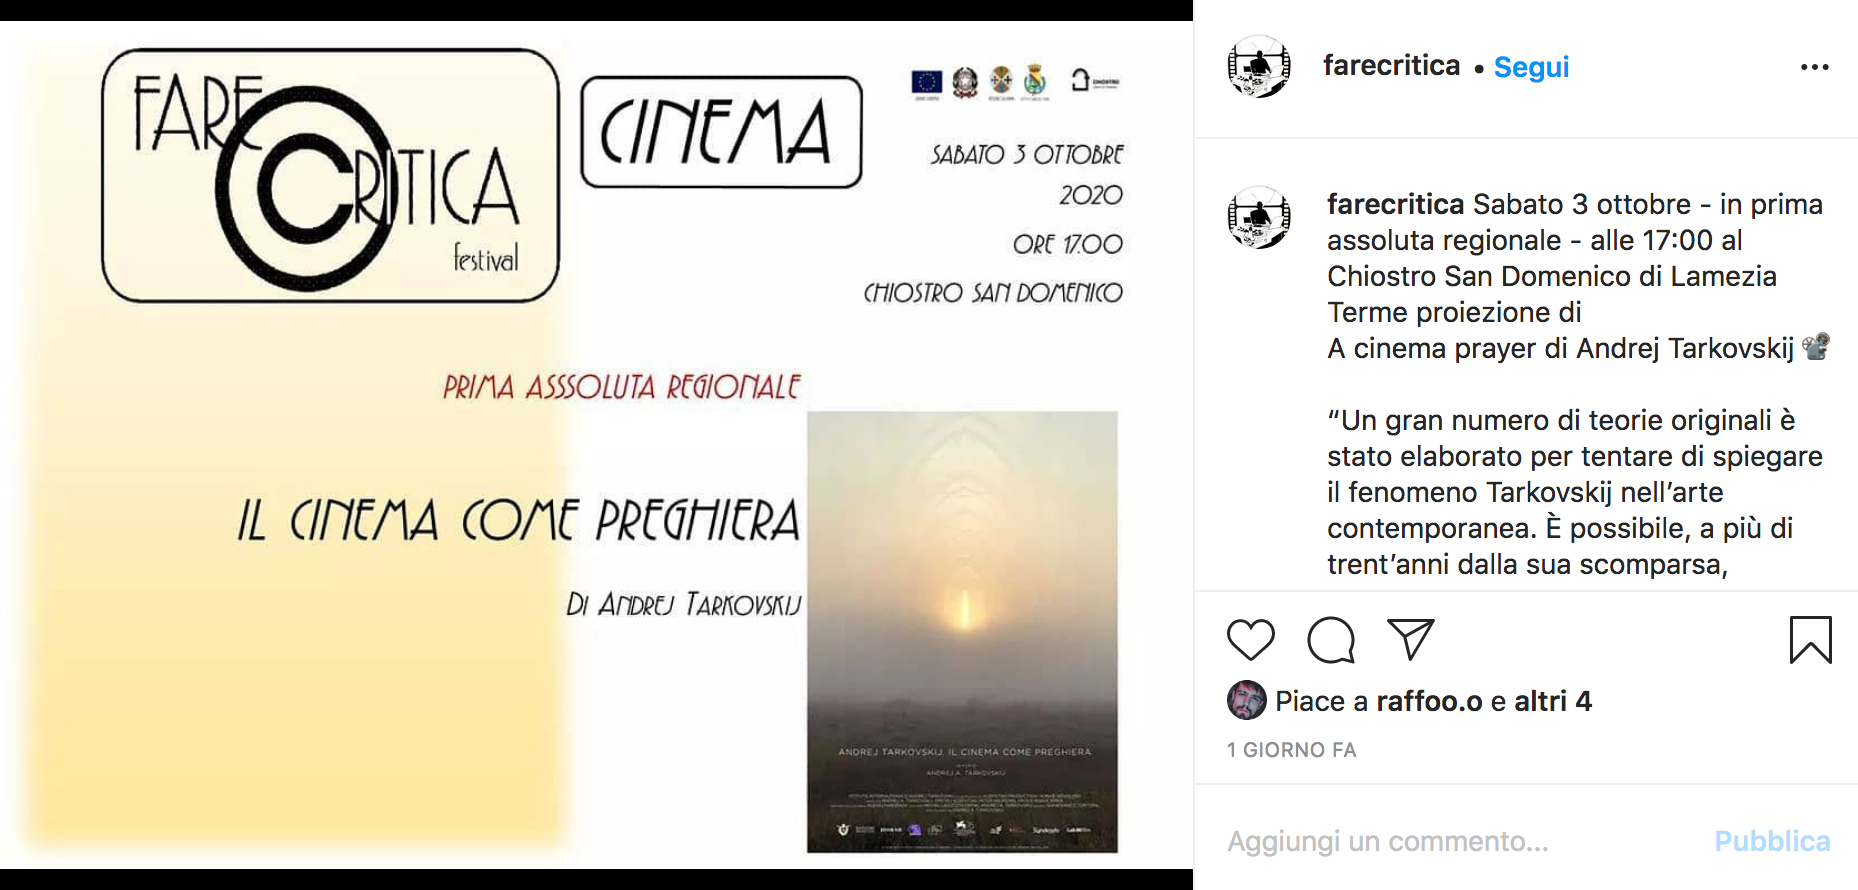 Il cinema come preghiera di Andrej Tarkovskij